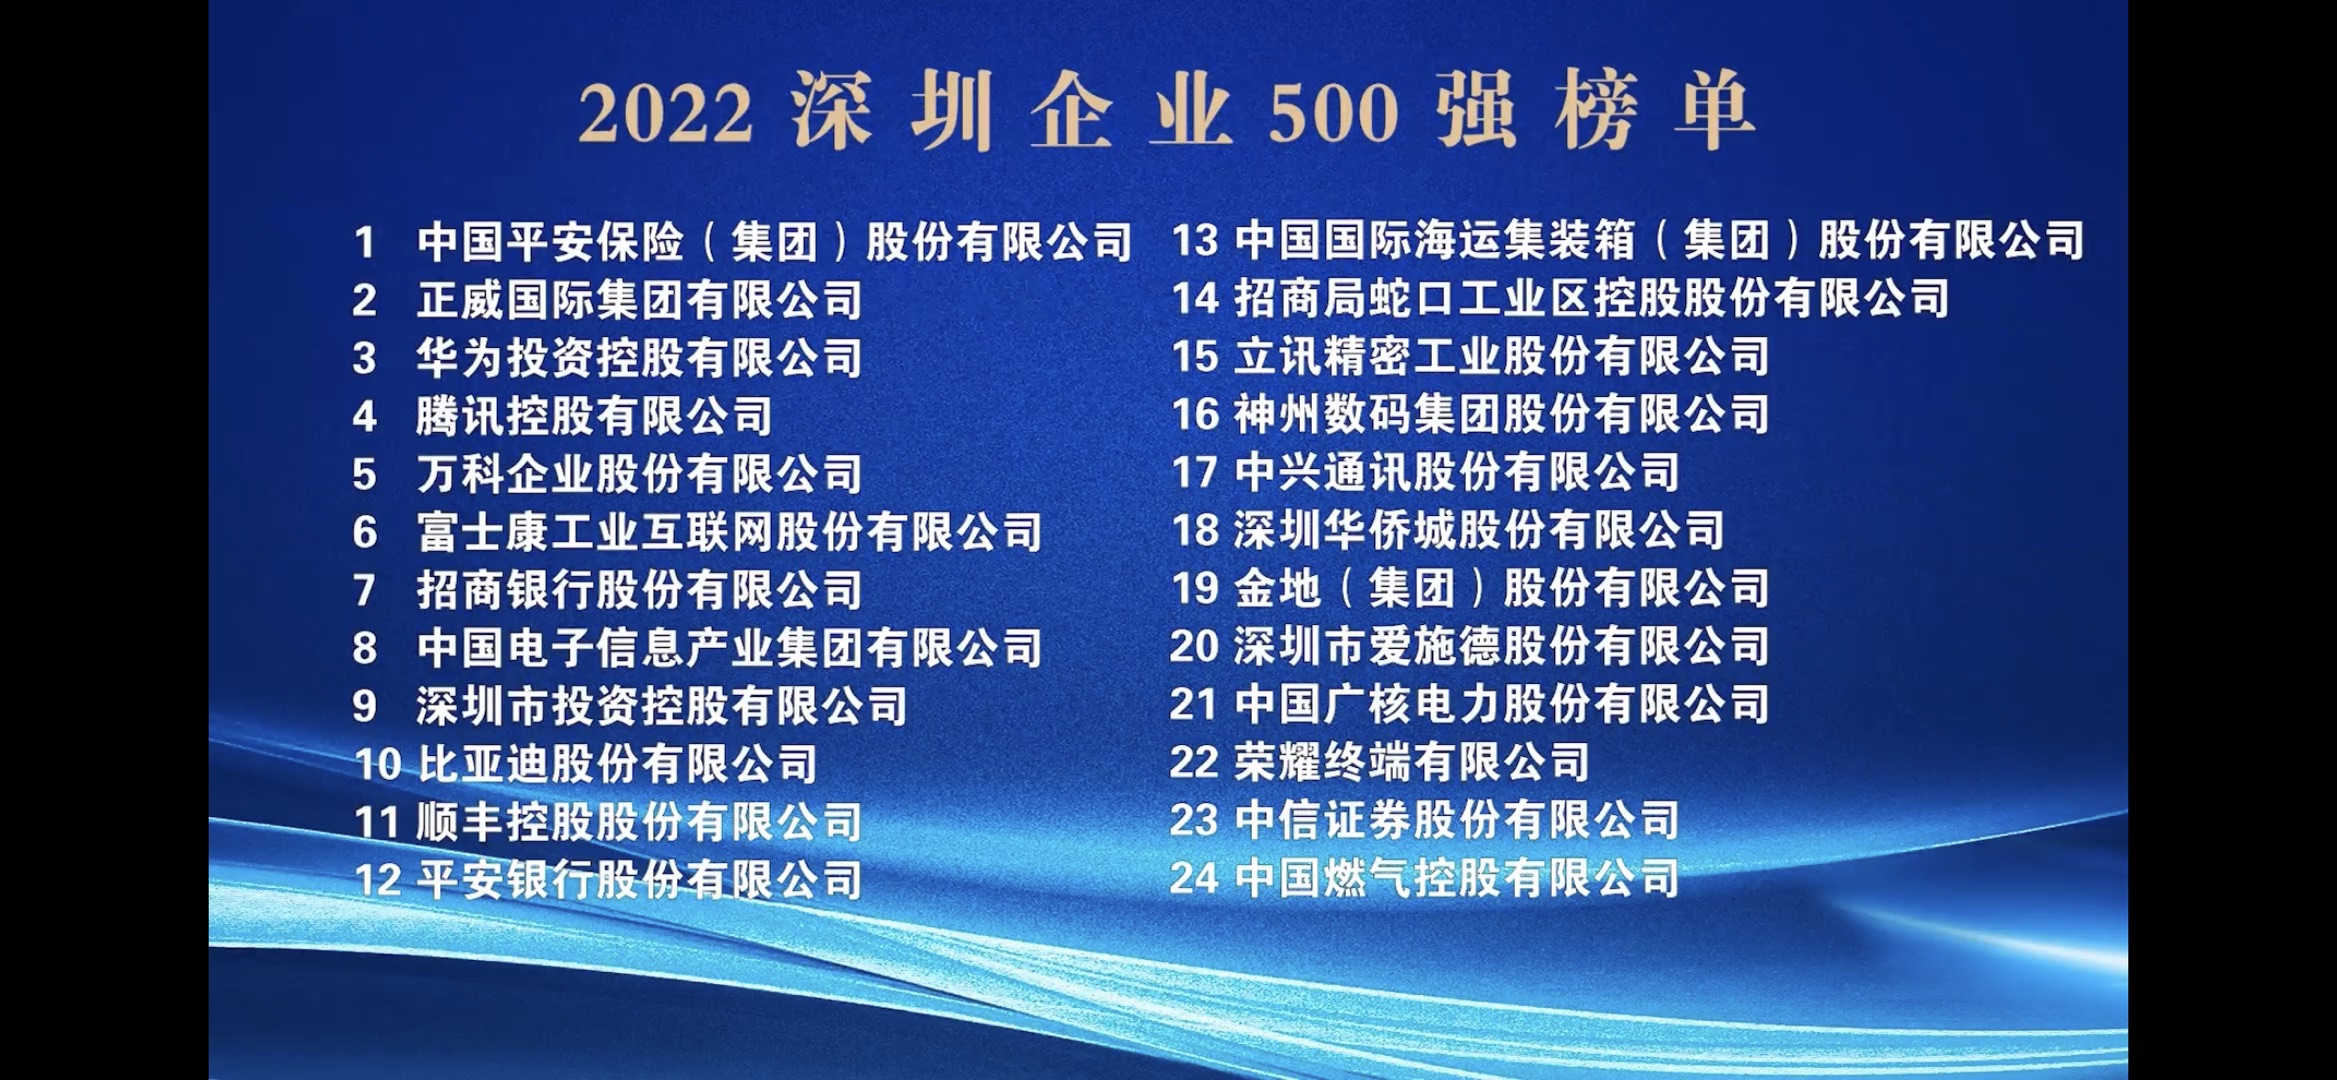 喜讯：威尼斯wns8885566再次荣登“深圳500强企业榜单”